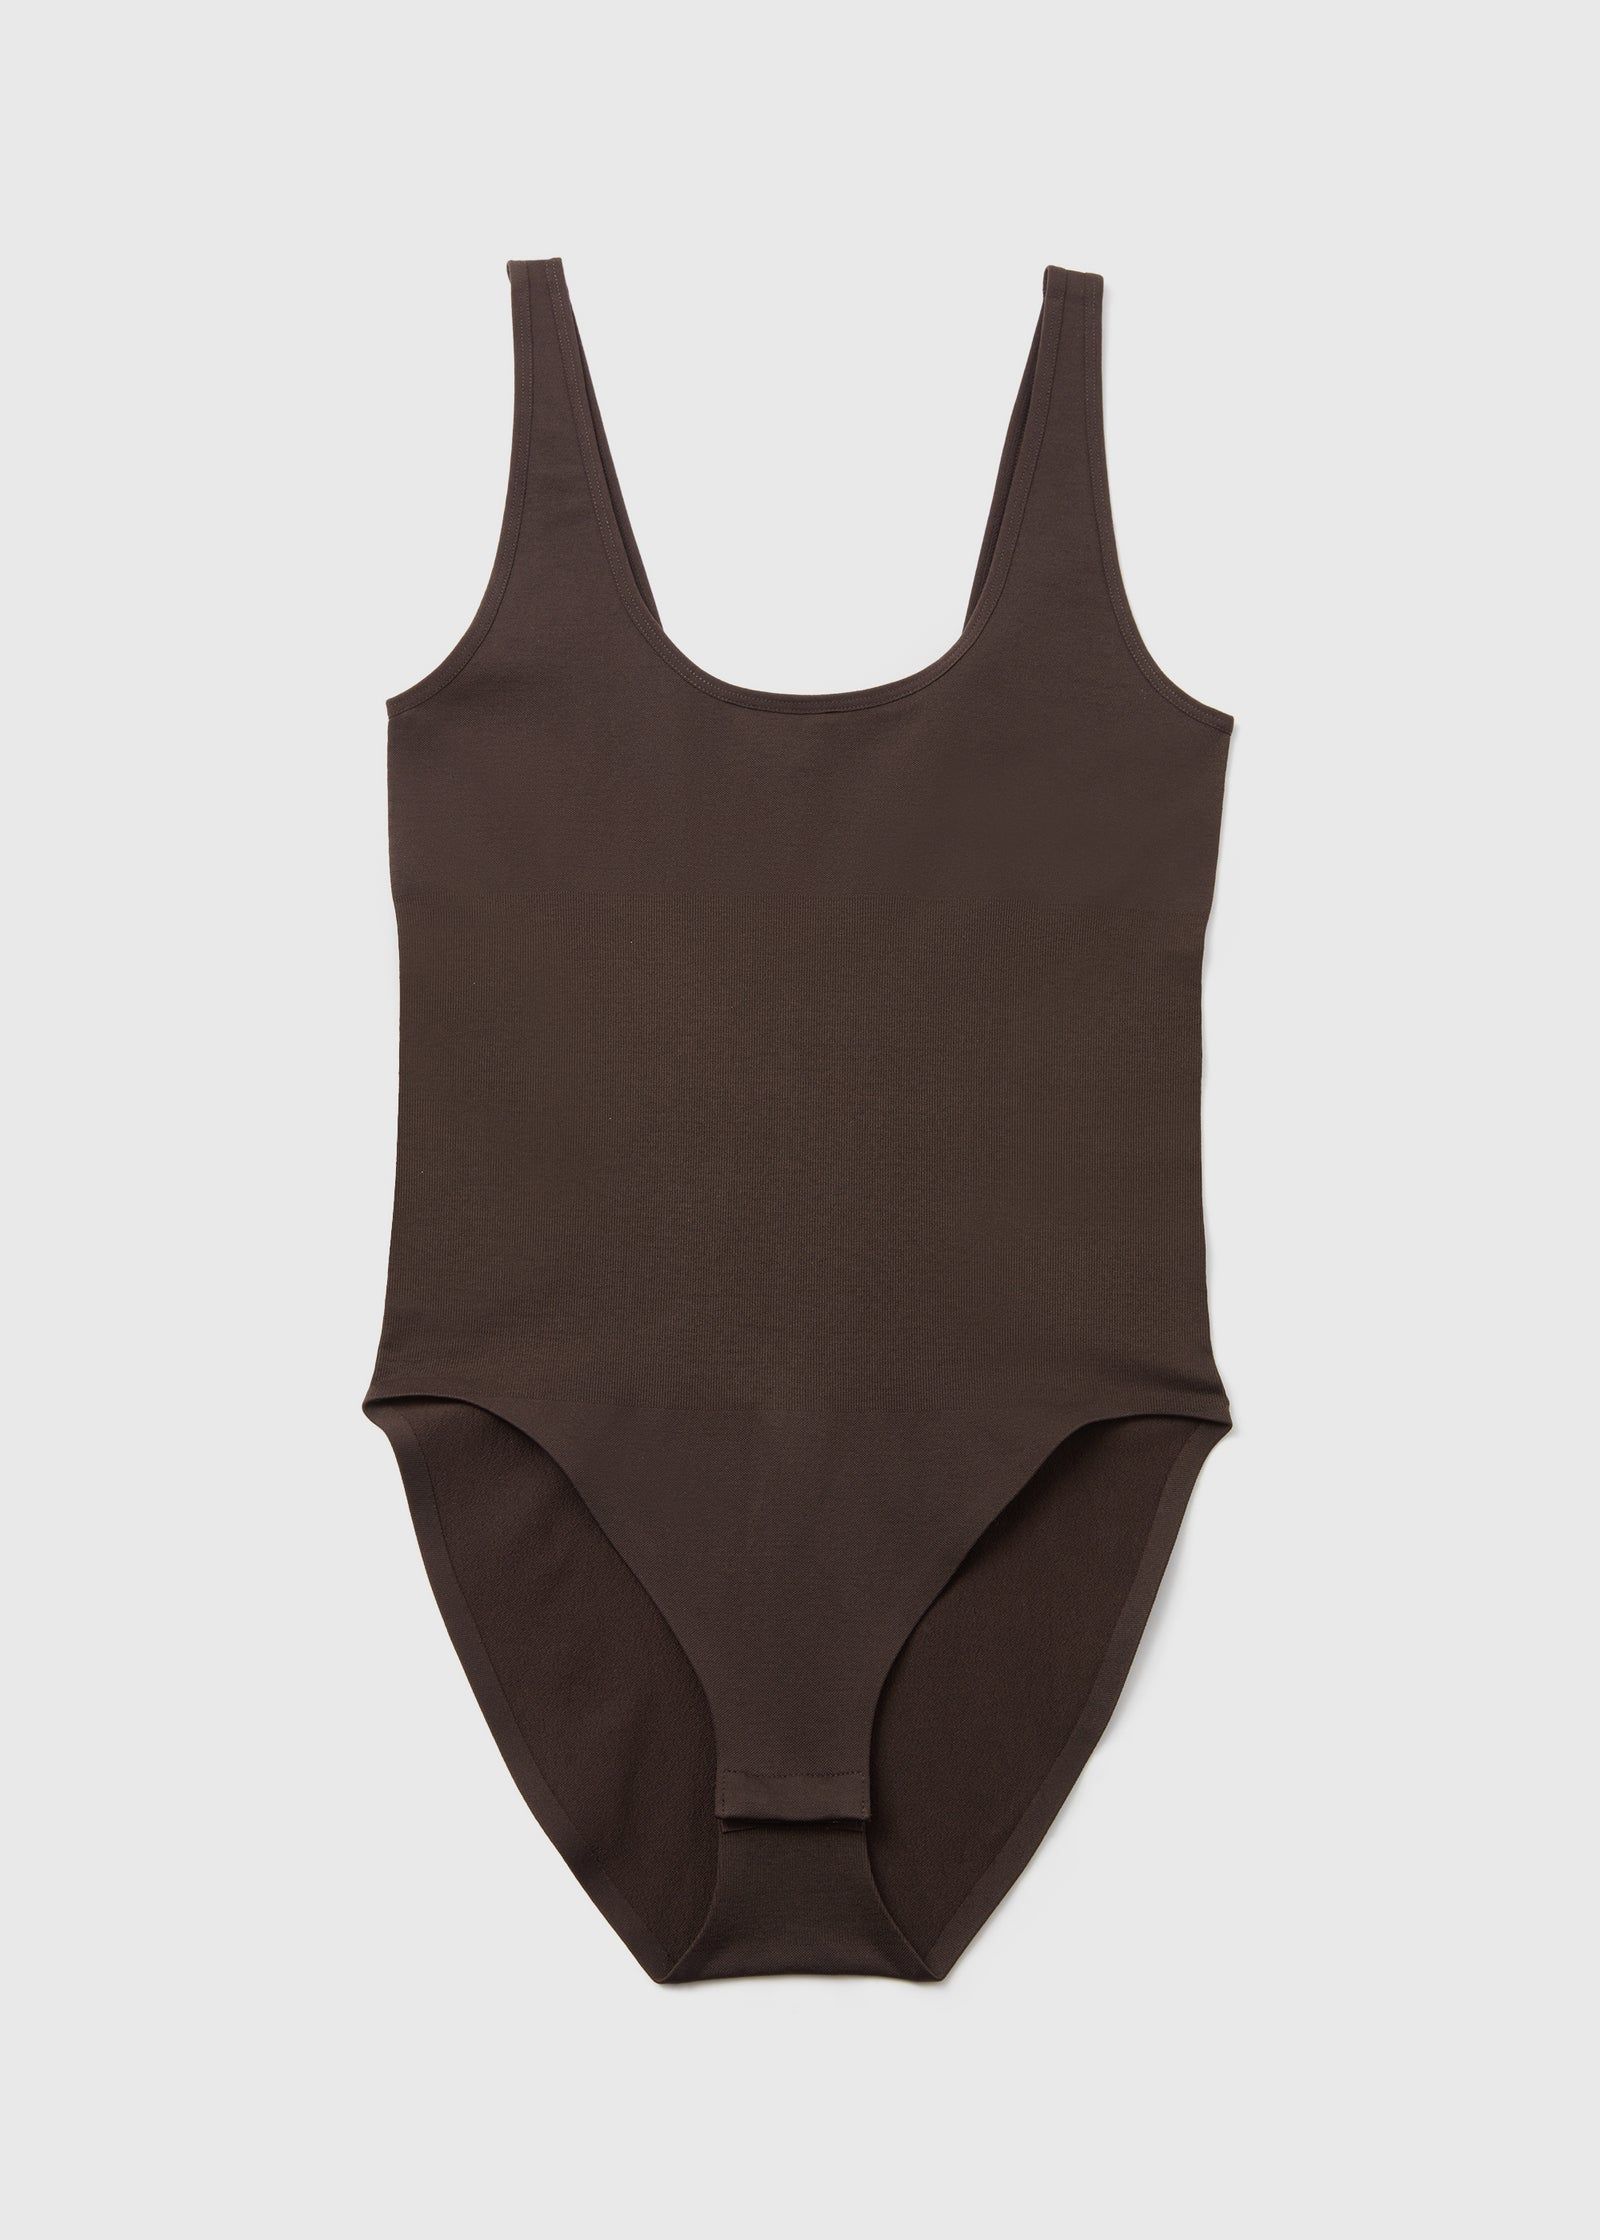 Buy Brown Seamless Smoothing Bodysuit in Bahrain - bfab